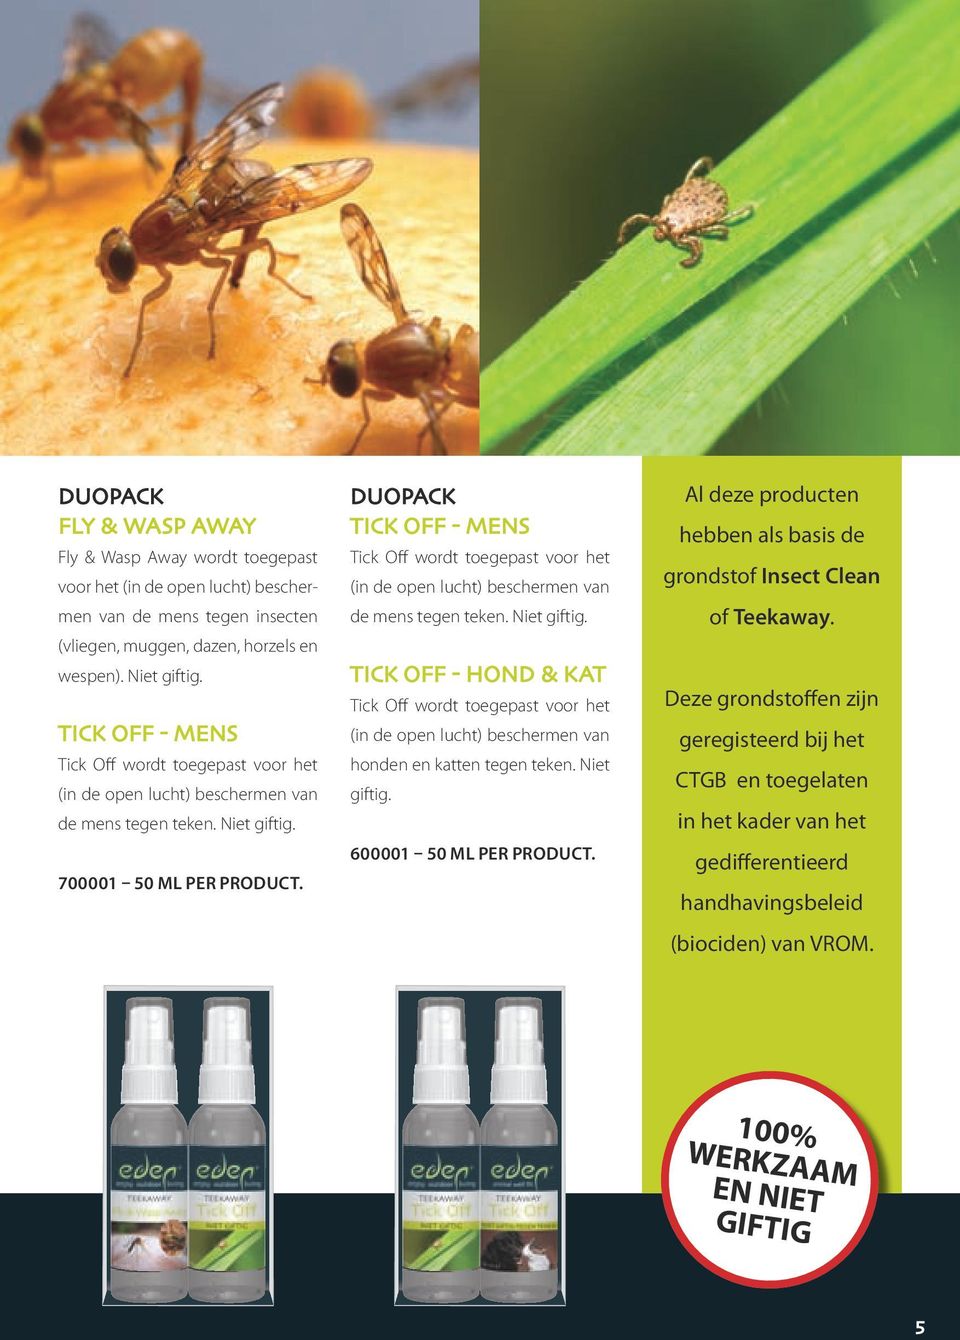 Niet giftig. 600001 50 ml per product. Al deze producten hebben als basis de grondstof Insect Clean of Teekaway.